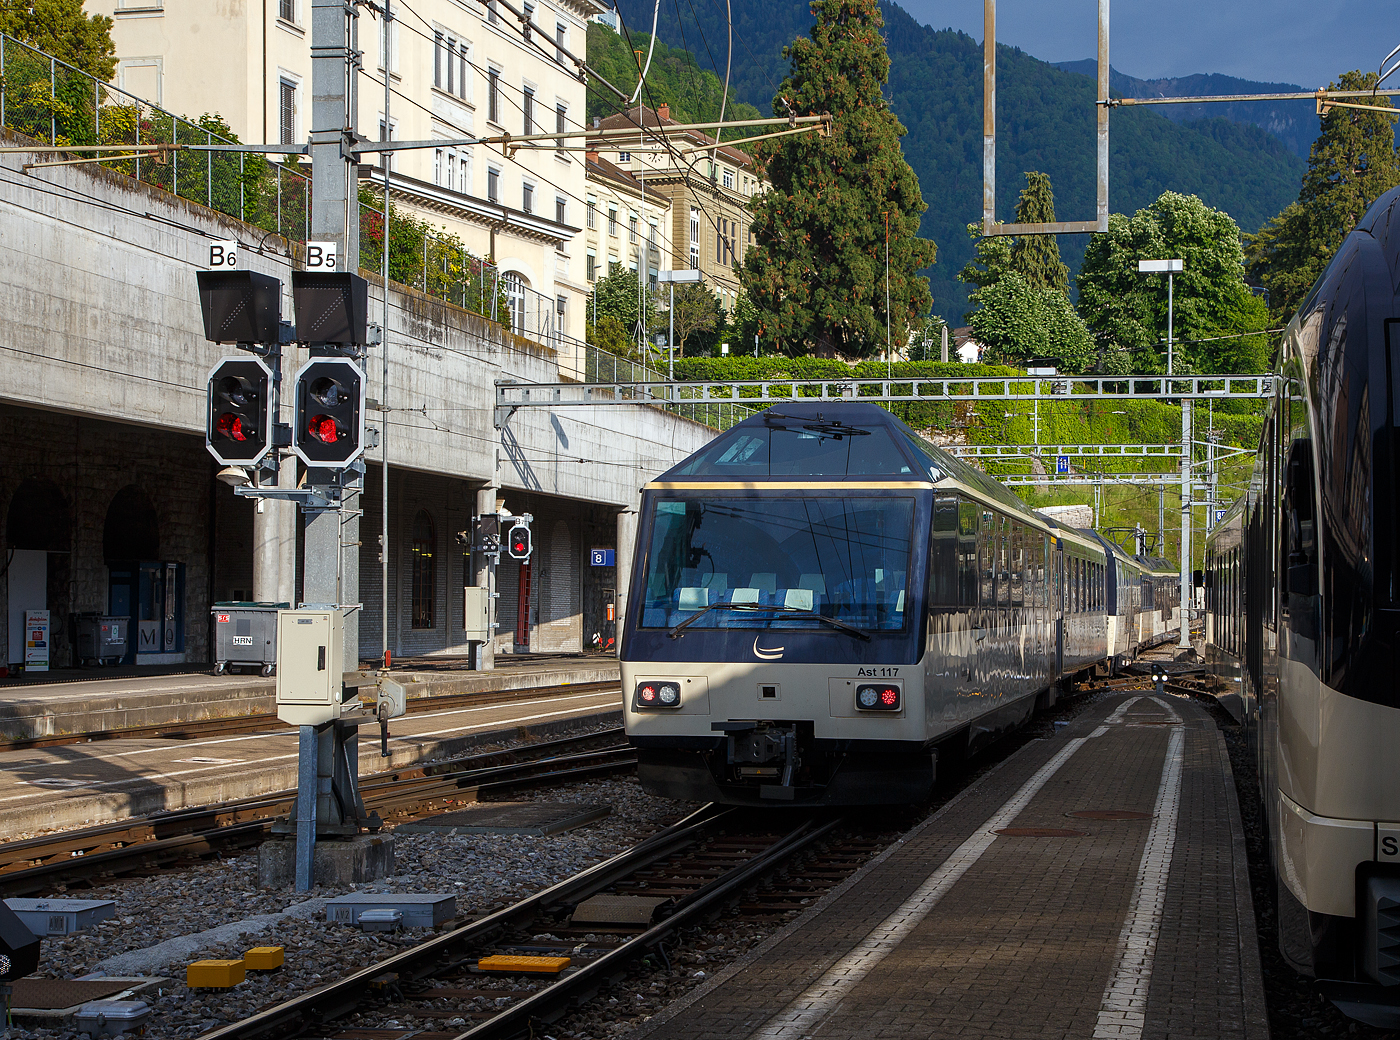 Der MOB GoldenPass-Zug R 2232 nach Zweisimmen verlässt am 26 Mai 2023 den Bahnhof Montreux, am Zugschluss der vierachsige MOB 1.Klasse Panorama-Steuerwagen Ast 117 (ex Arst 117).

Beflügelt durch den Erfolg des “Panoramic-Express” nahm die MOB 1986 eine dritte Komposition in Betrieb, welche aber gegenüber den beiden vorherigen nur die erste Wagenklasse führte und von zwei Panorama-Steuerwagen an beiden Zugenden gesteuert wurden. Die beiden Arst 116/117 erhielten dabei die Führerstände aus den dazwischen eingereihten Triebwagen BDe 3005/3006, welche ebenfalls farblich an den Zug angepasst wurden. Der Barwagen Ars 115 komplettierte den Paradezug der MOB. Ganze Frontseite steht den (VIP) Reisenden als Aussichtsabteil zur Verfügung. 

TECHNISCHE DATEN:
Hersteller: R&J / MOB / SIG
Spurweite: 1.000 mm (Meterspur)
Achsanzahl: 4 (in 2 Drehgestellen)
Länge über Puffer: 17.290 mm 
Wagenkastenlänge: 16.470mm
Höhe: 3.700 mm
Breite: 2.650 mm
Drehzapfenabstand: 11.350 mm 
Achsabstand im Drehgestell: 1.800 mm
Drehgestell Typ: SIG- Torsionsstab
Laufraddurchmesser: 750 mm (neu)
Eigengewicht: 20  t 
Höchstgeschwindigkeit: 100 km/h
Sitzplätze: 8 VIP-Plätze hinter der Frontscheibe und 25 in der 1. Klasse  
WC: 1

Quellen: x-rail.ch 